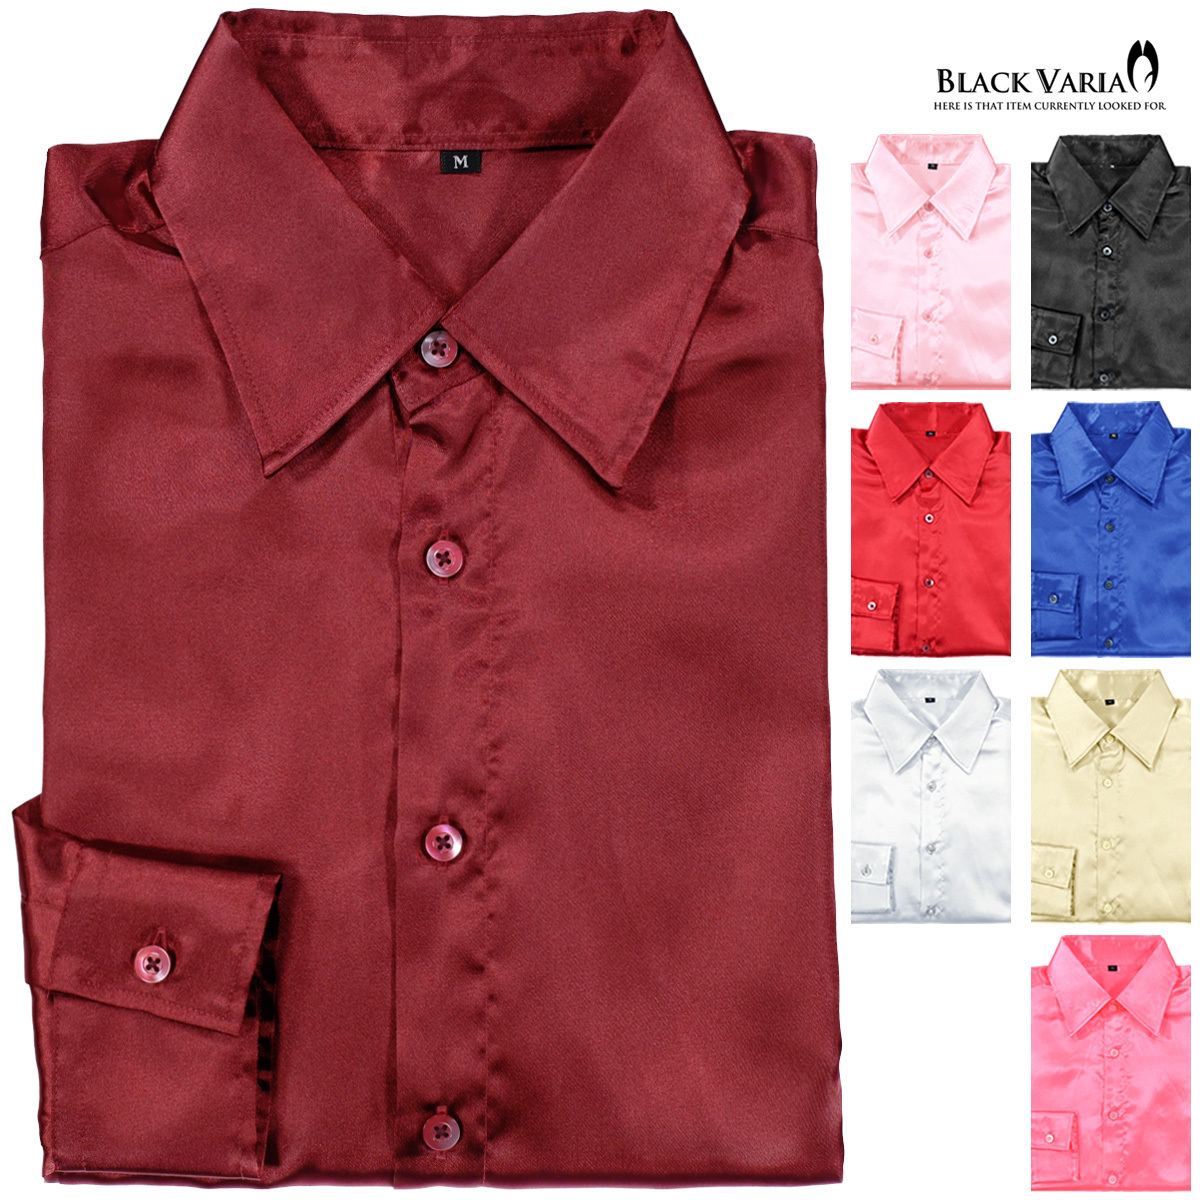 ネコポス可★141405-re BLACK VARIA 光沢サテン 無地 スリム レギュラーカラードレスシャツ メンズ(ワインレッド赤) SS 衣装_画像4